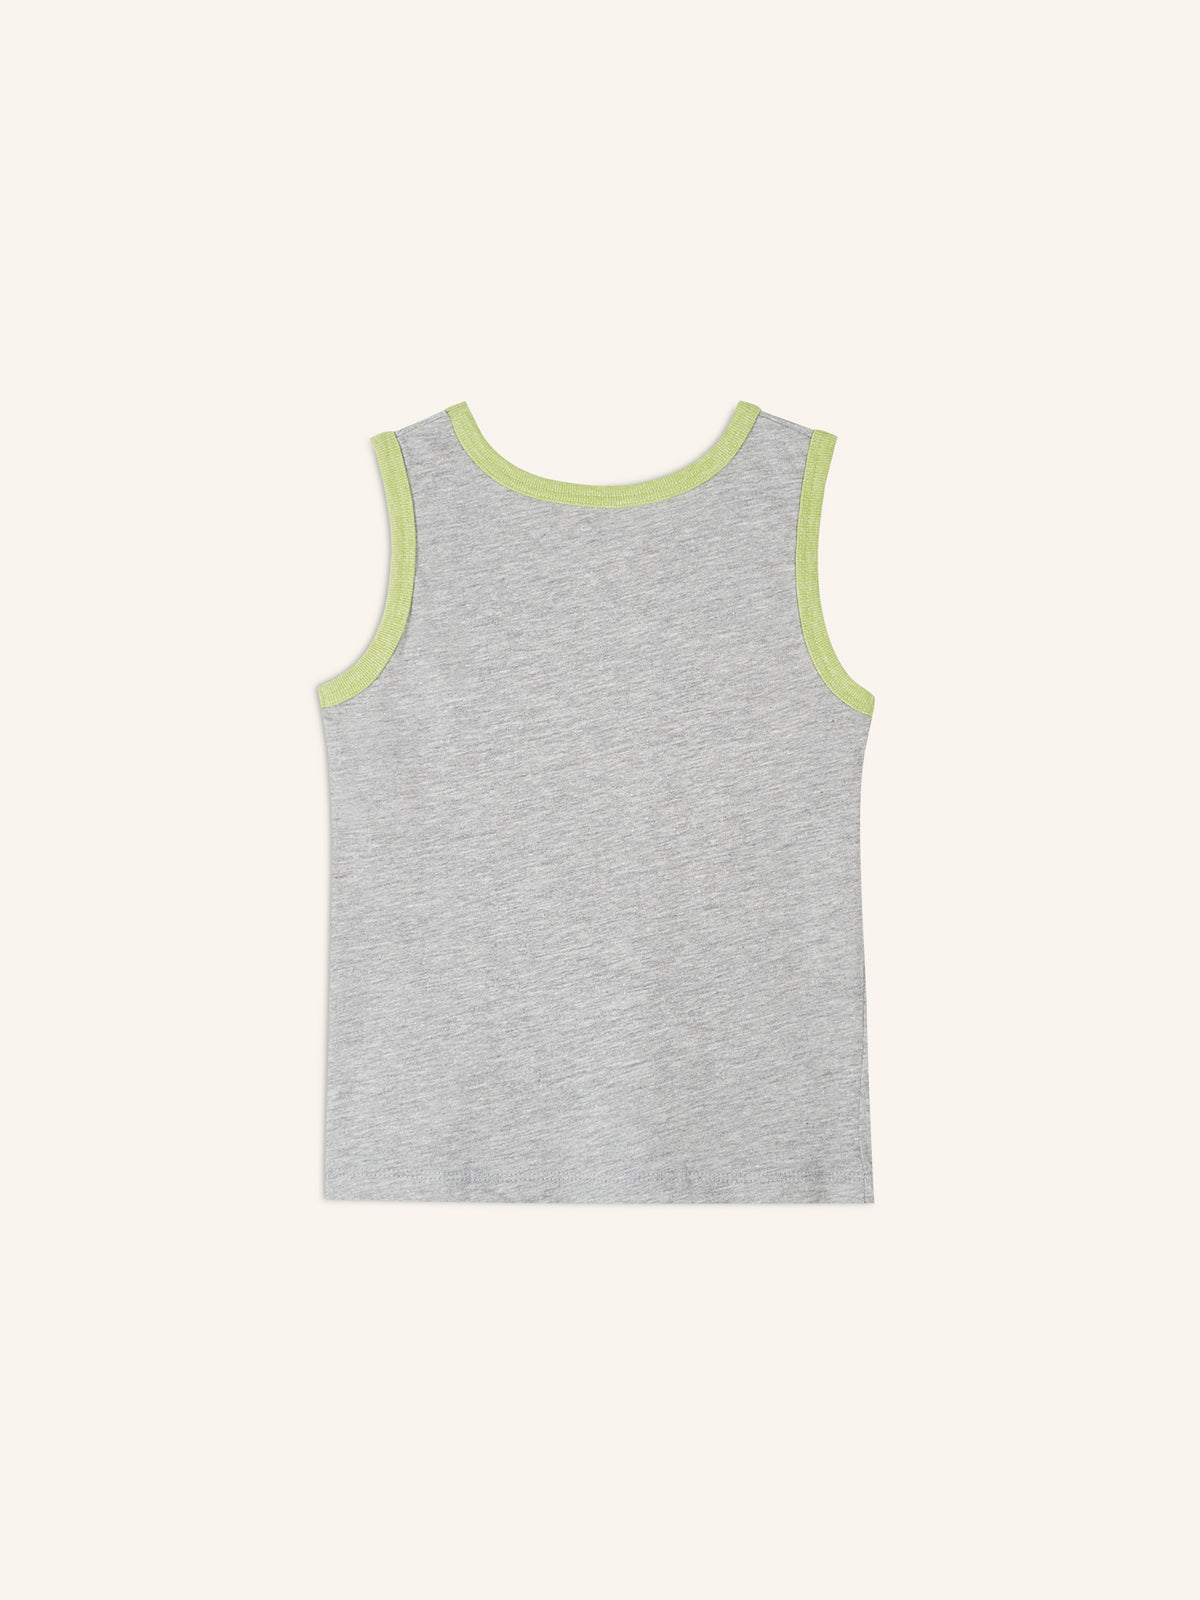 Unisex Sleeveless T-Shirt for Toddler